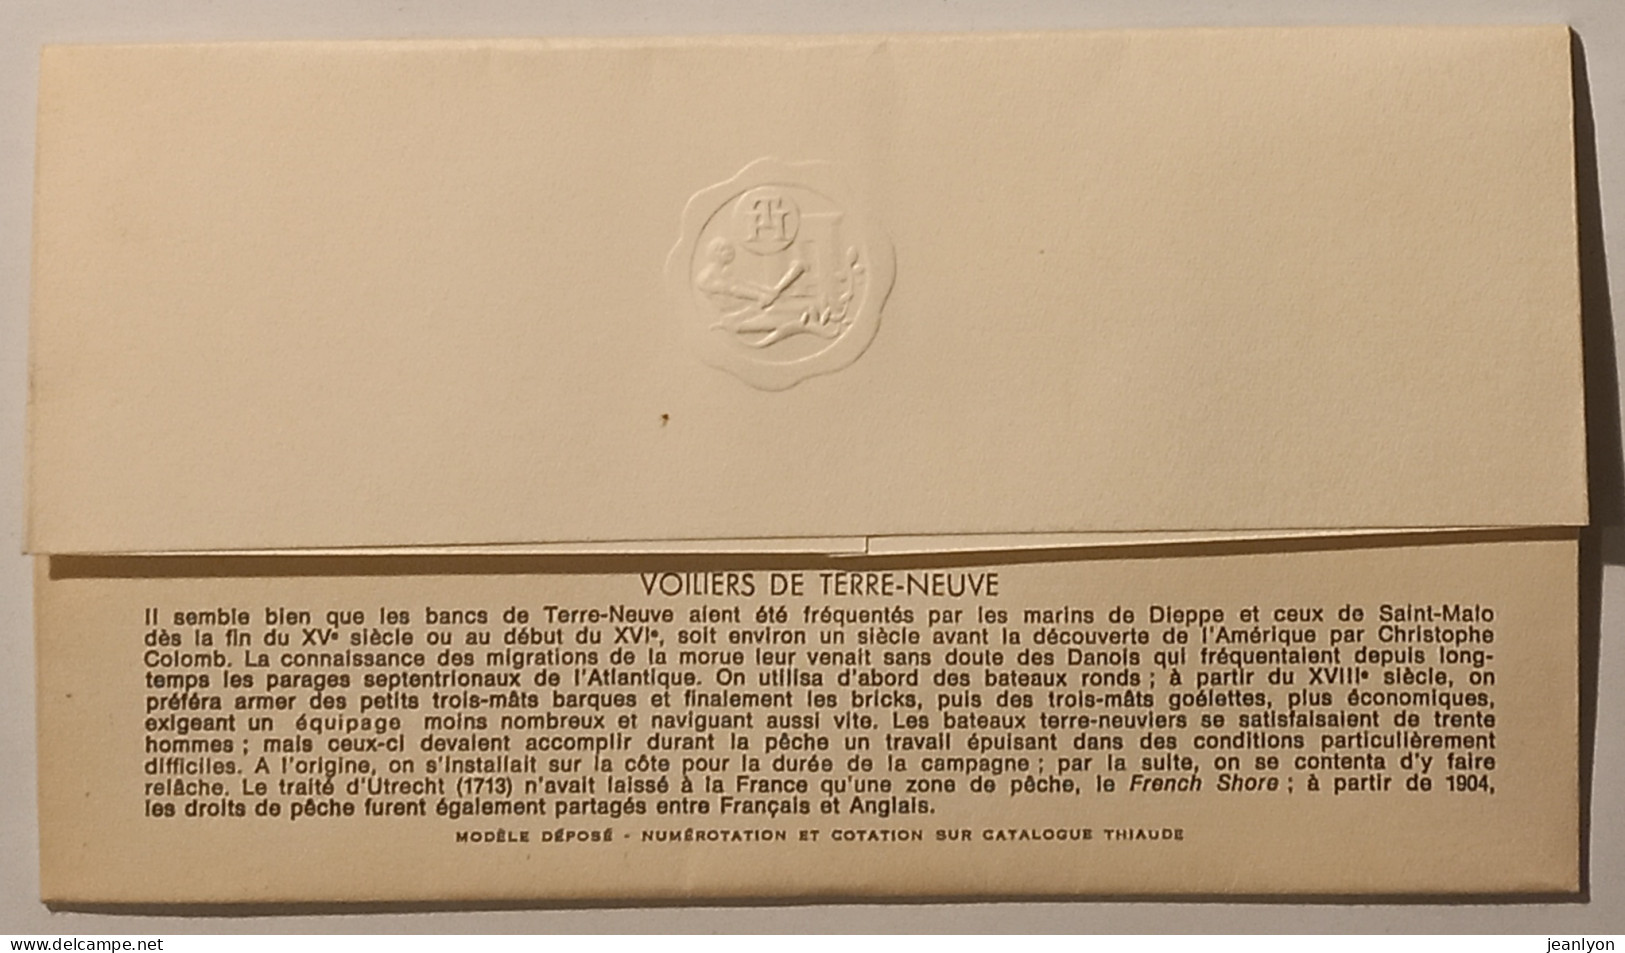 VOILIERS TERRE NEUVE / Bateau - Illustrateur Andreotto - Document Philatélique Format Enveloppe Timbre Cachet DINARD - Schiffe